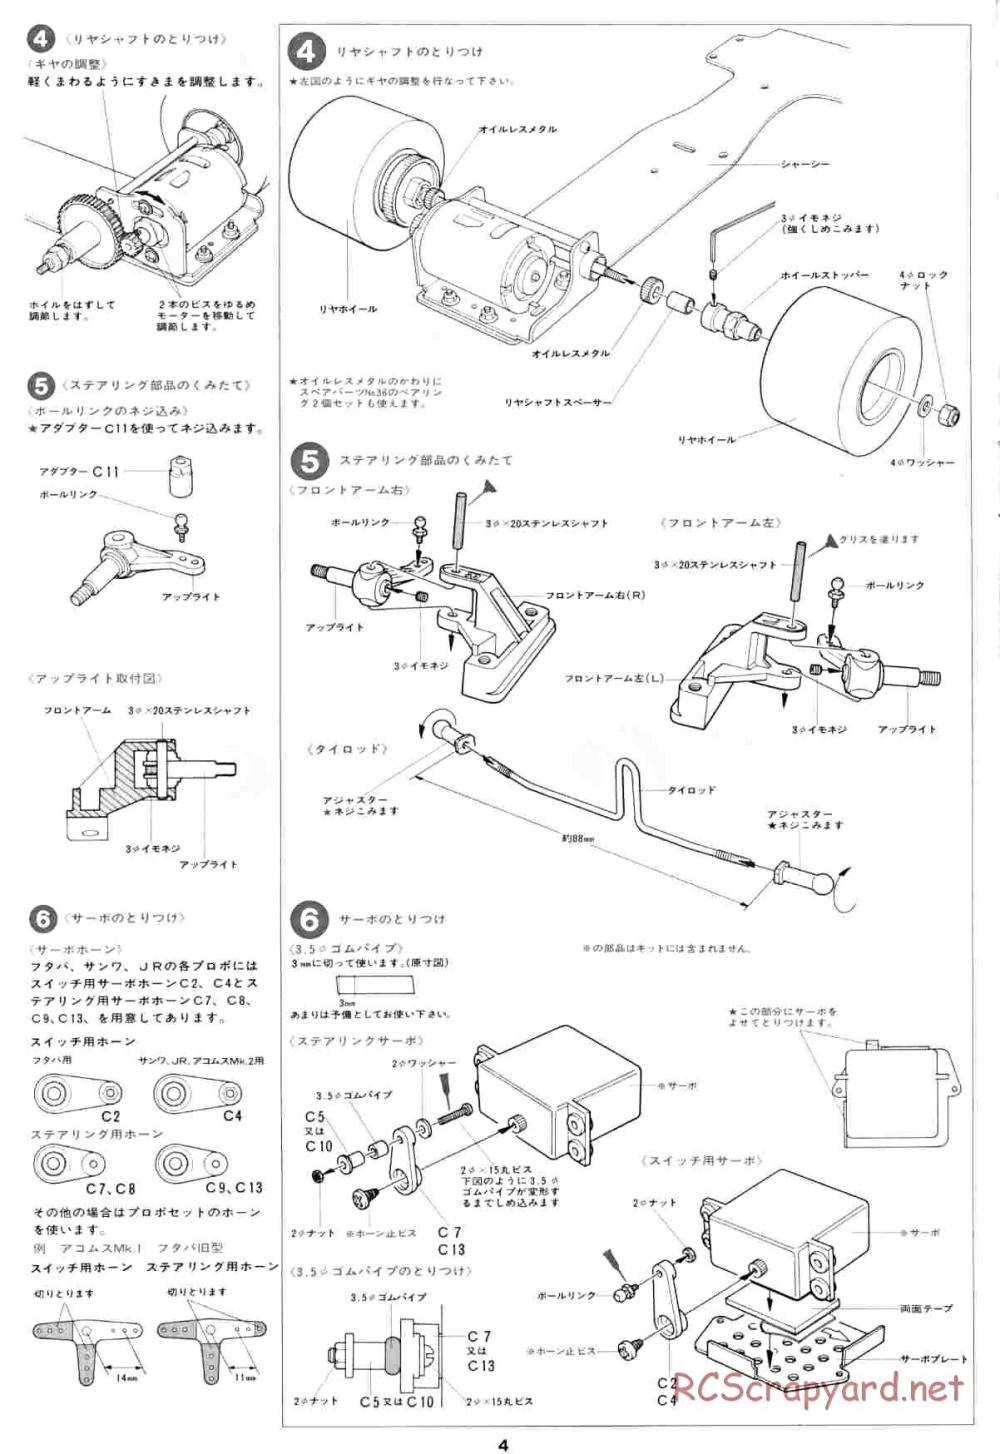 Tamiya - Honda F2 (CS) - 58030 - Manual - Page 4